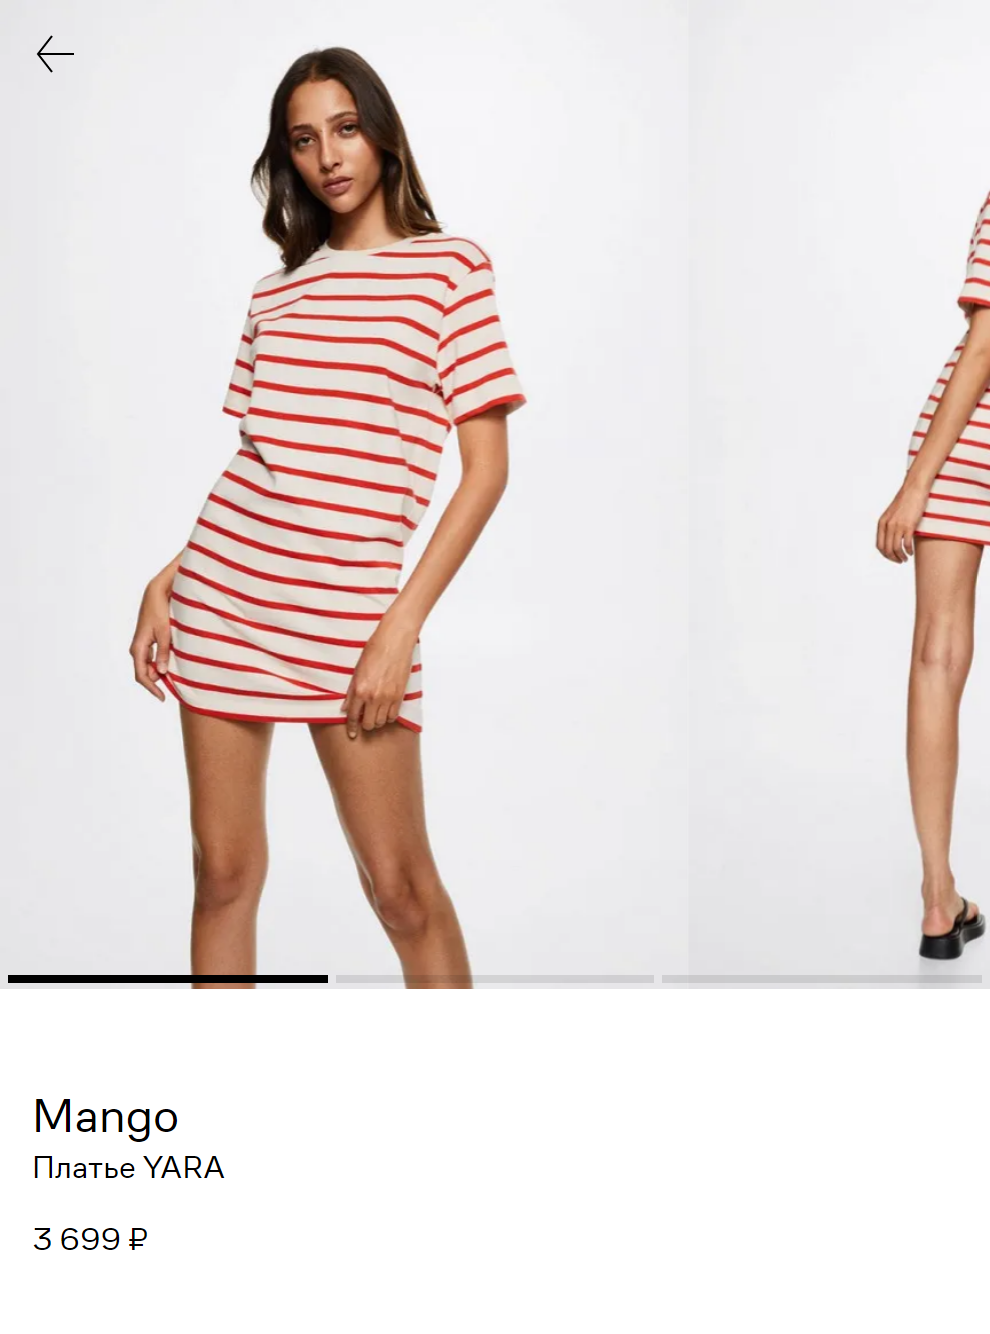 Аналогичное платье-футболка «Манго». Цены на такие модели из качественной ткани начинаются от 1500 <span class=ruble>Р</span>, а здесь оно стоит 3699 <span class=ruble>Р</span>. Источник: lamoda.ru